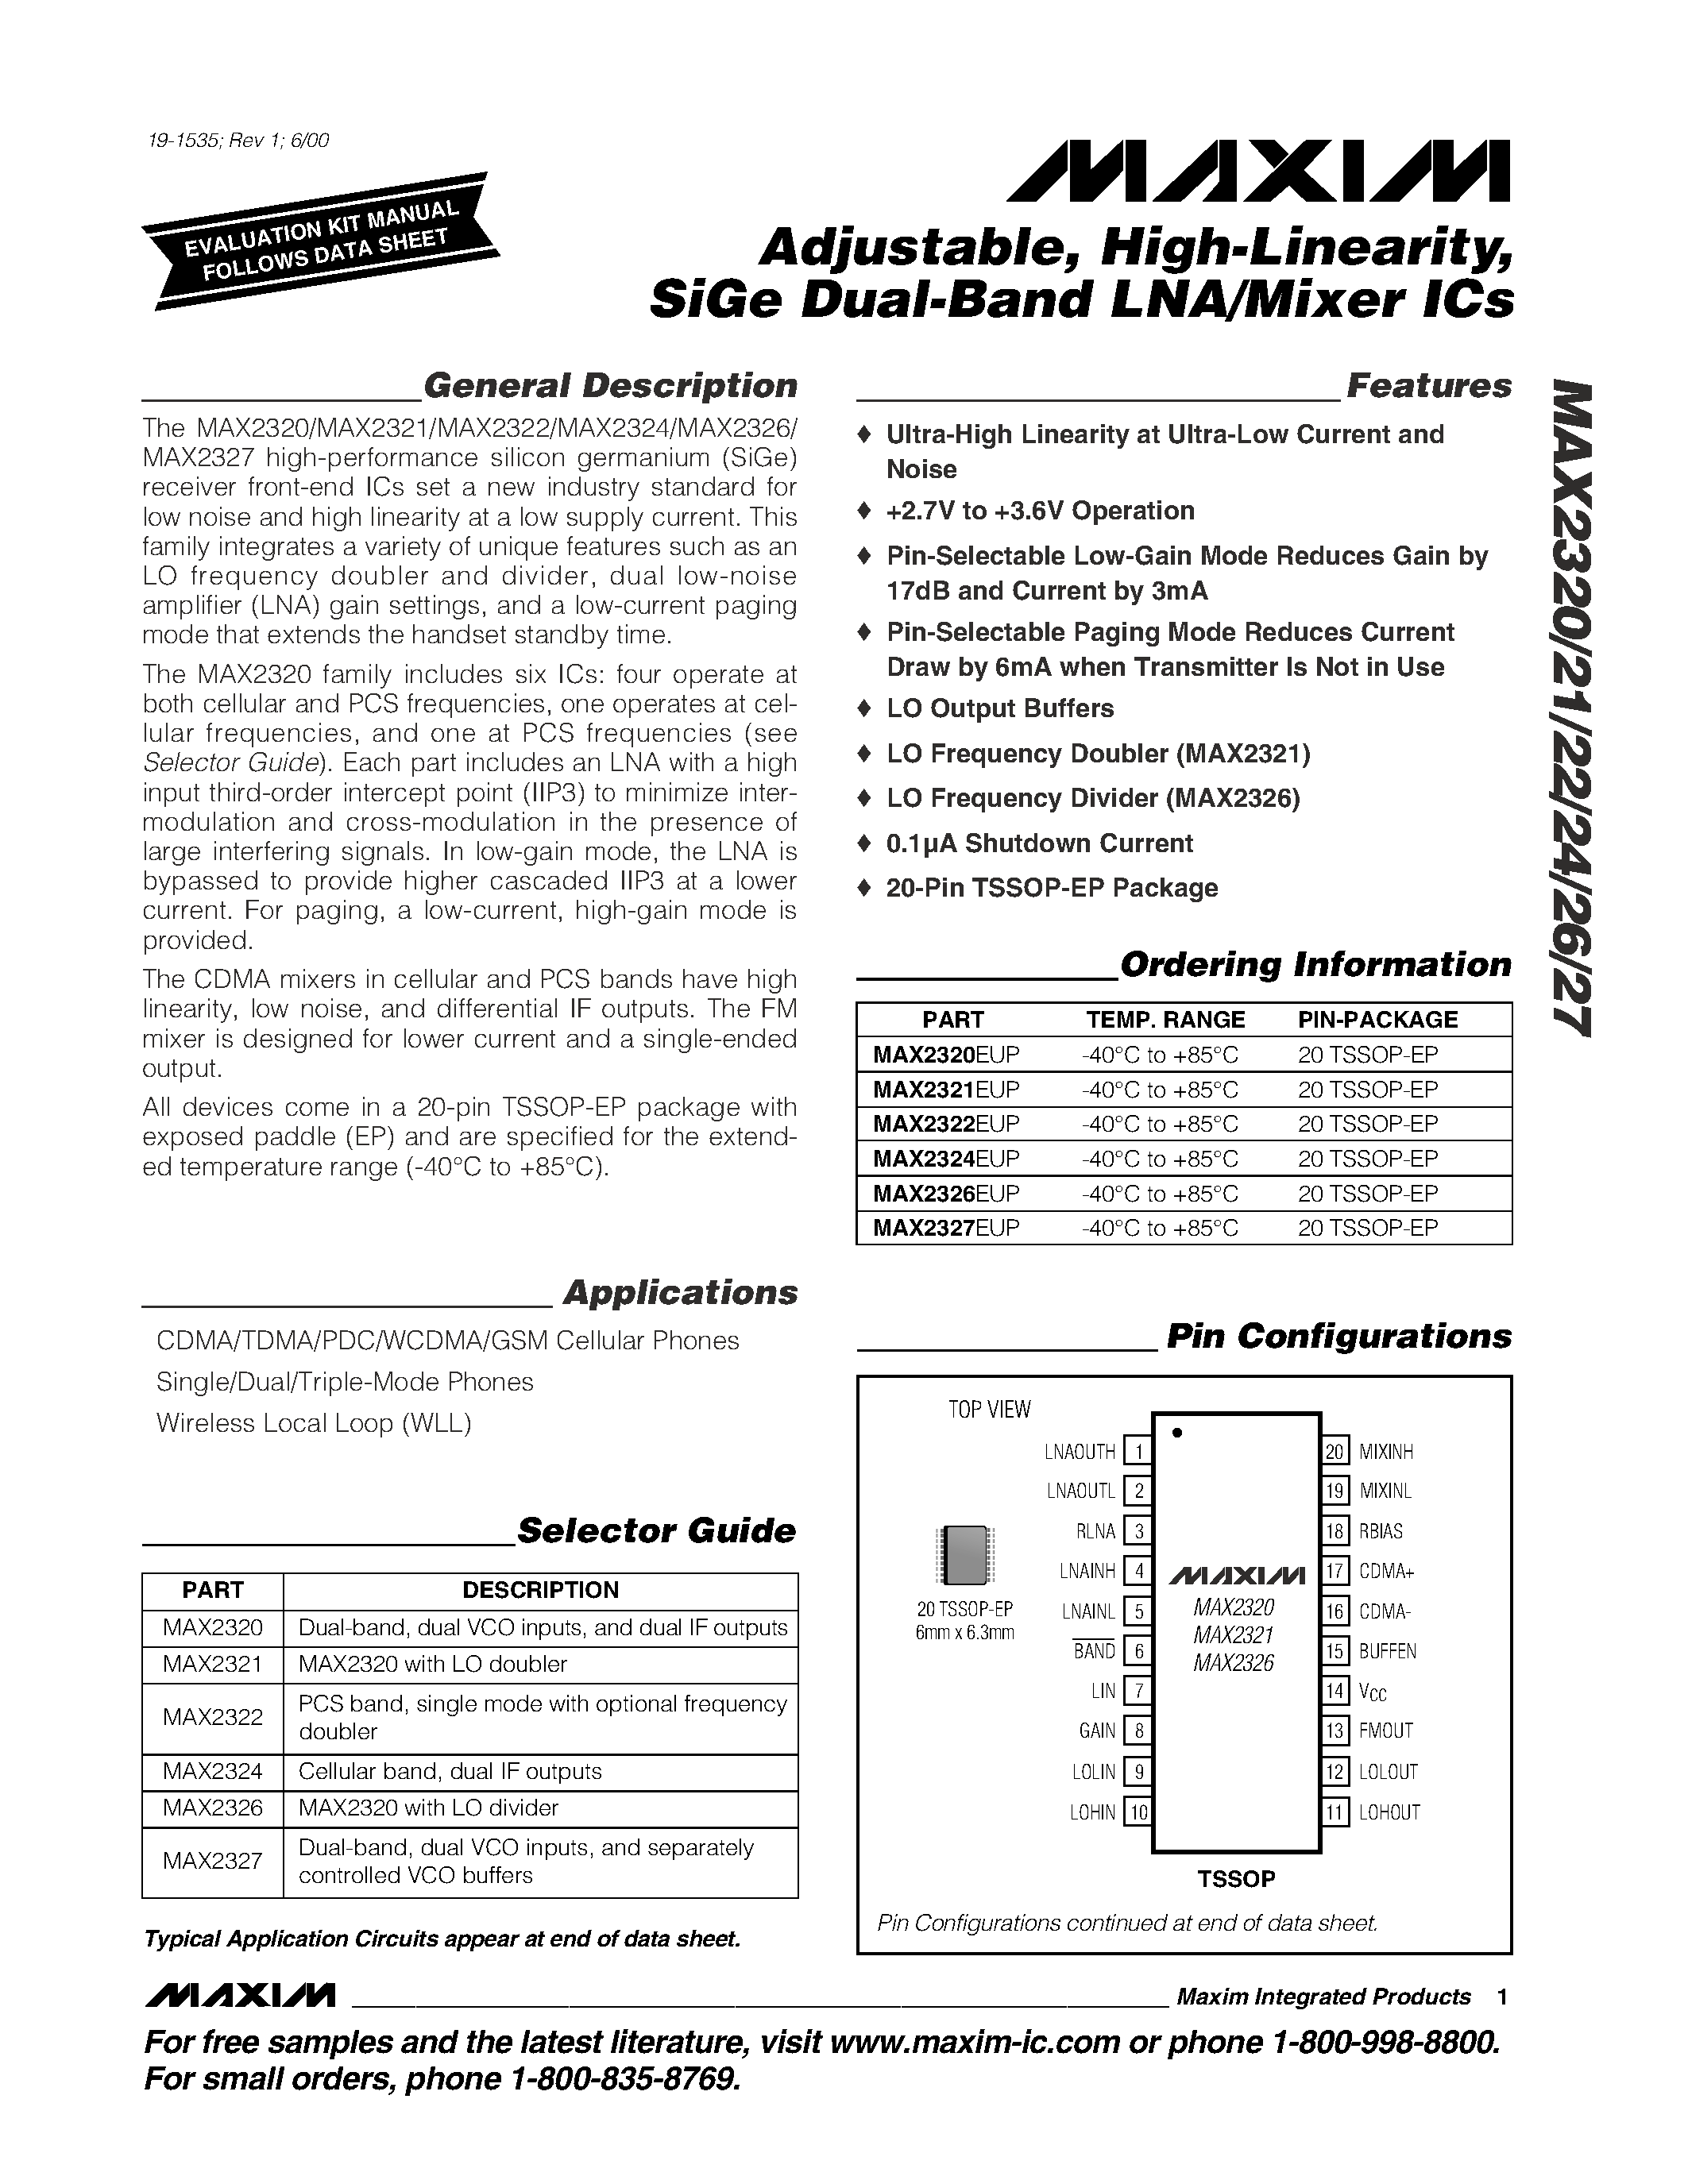 Даташит MAX2320 - Adjustable / High-Linearity / SiGe Dual-Band LNA/Mixer ICs страница 1